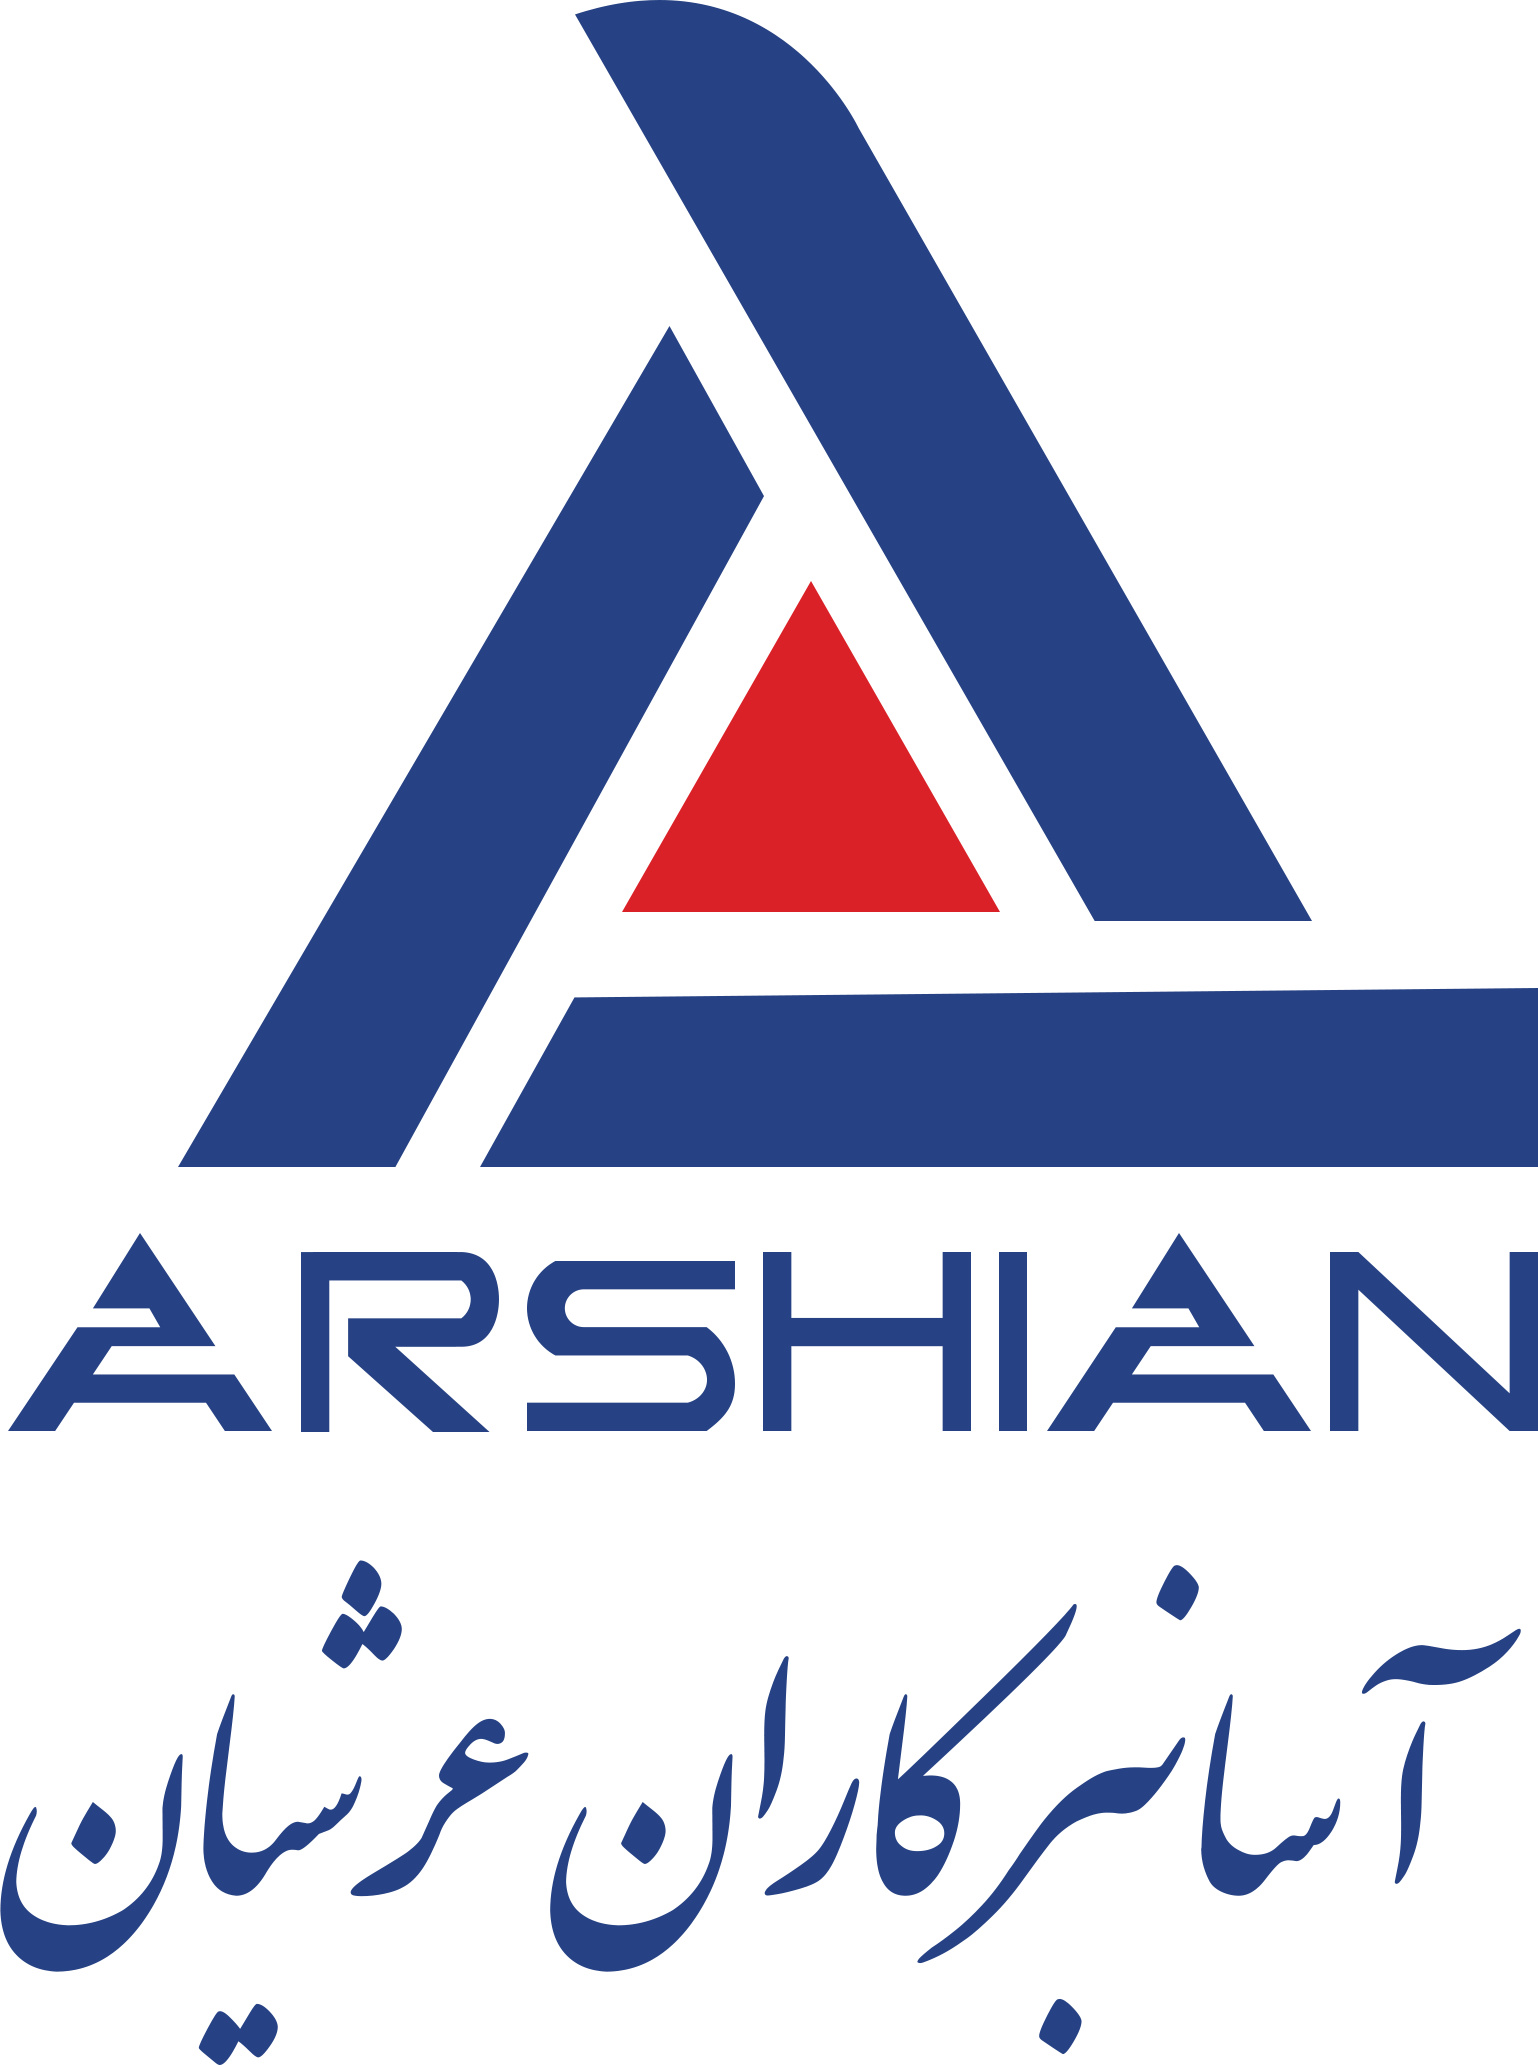 Arshian Logo